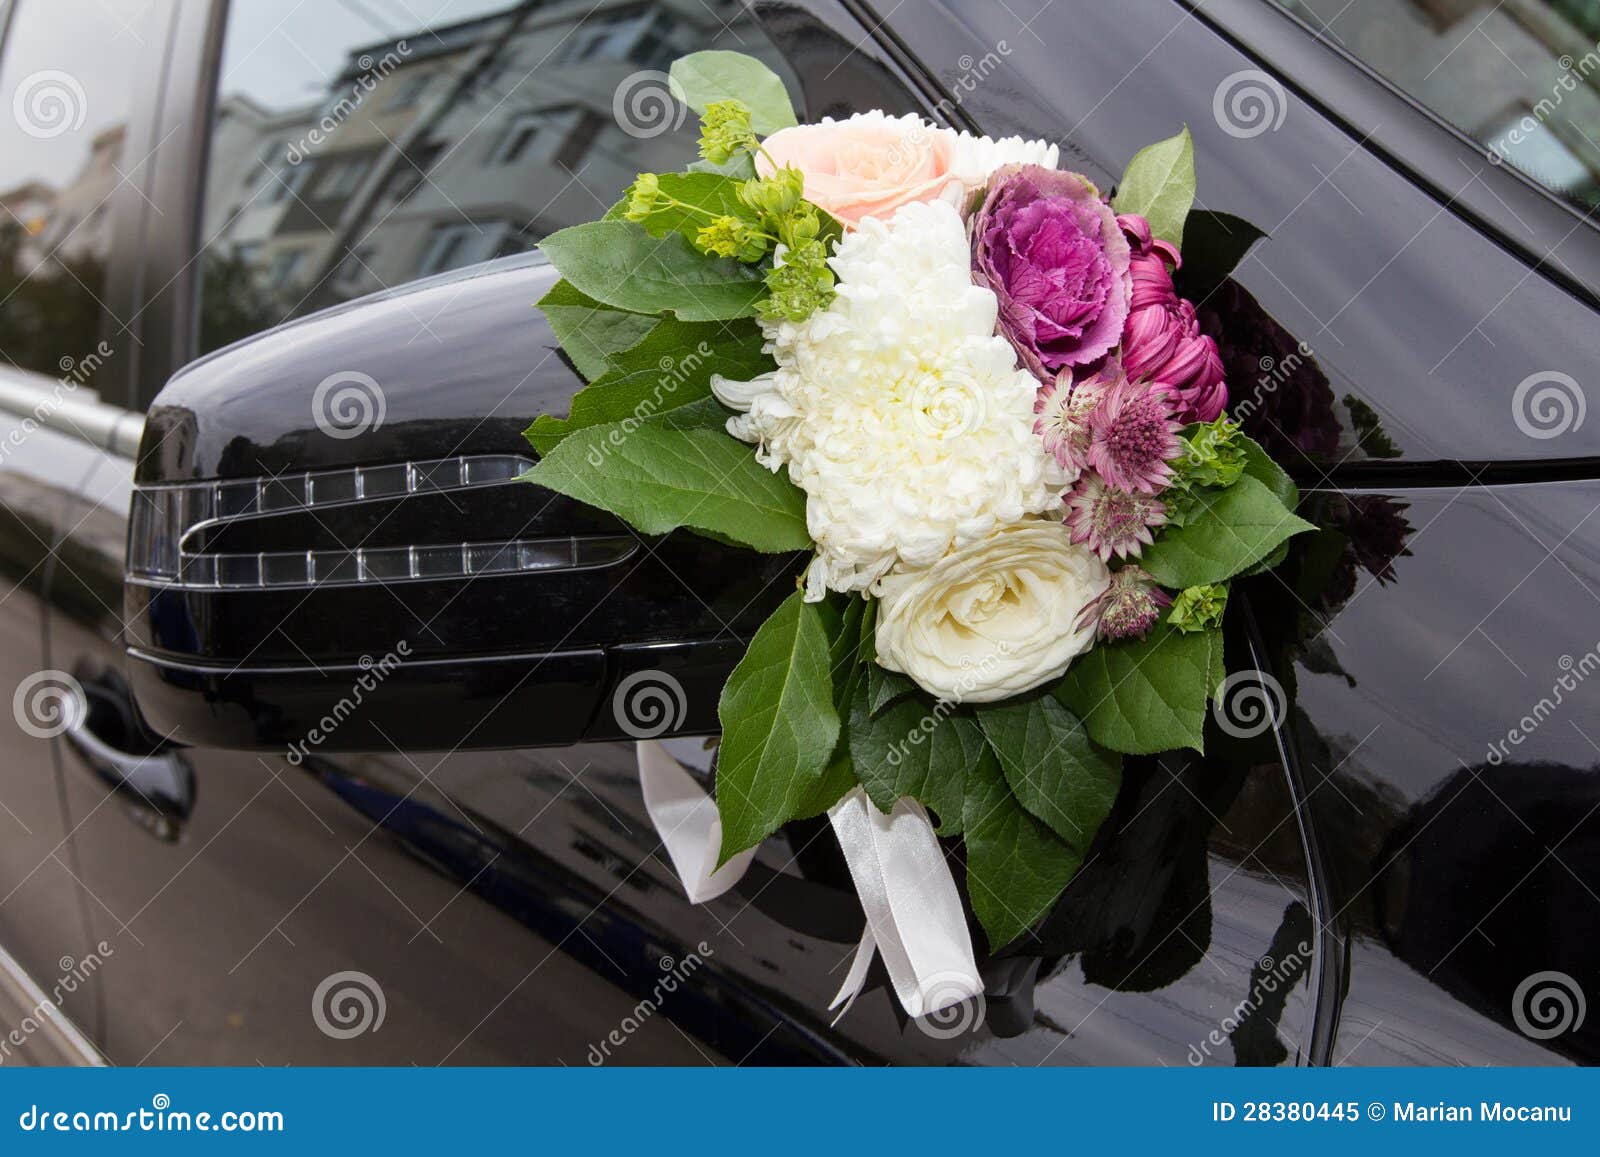 Wedding car decoration stock image. Image of automobile - 28380445